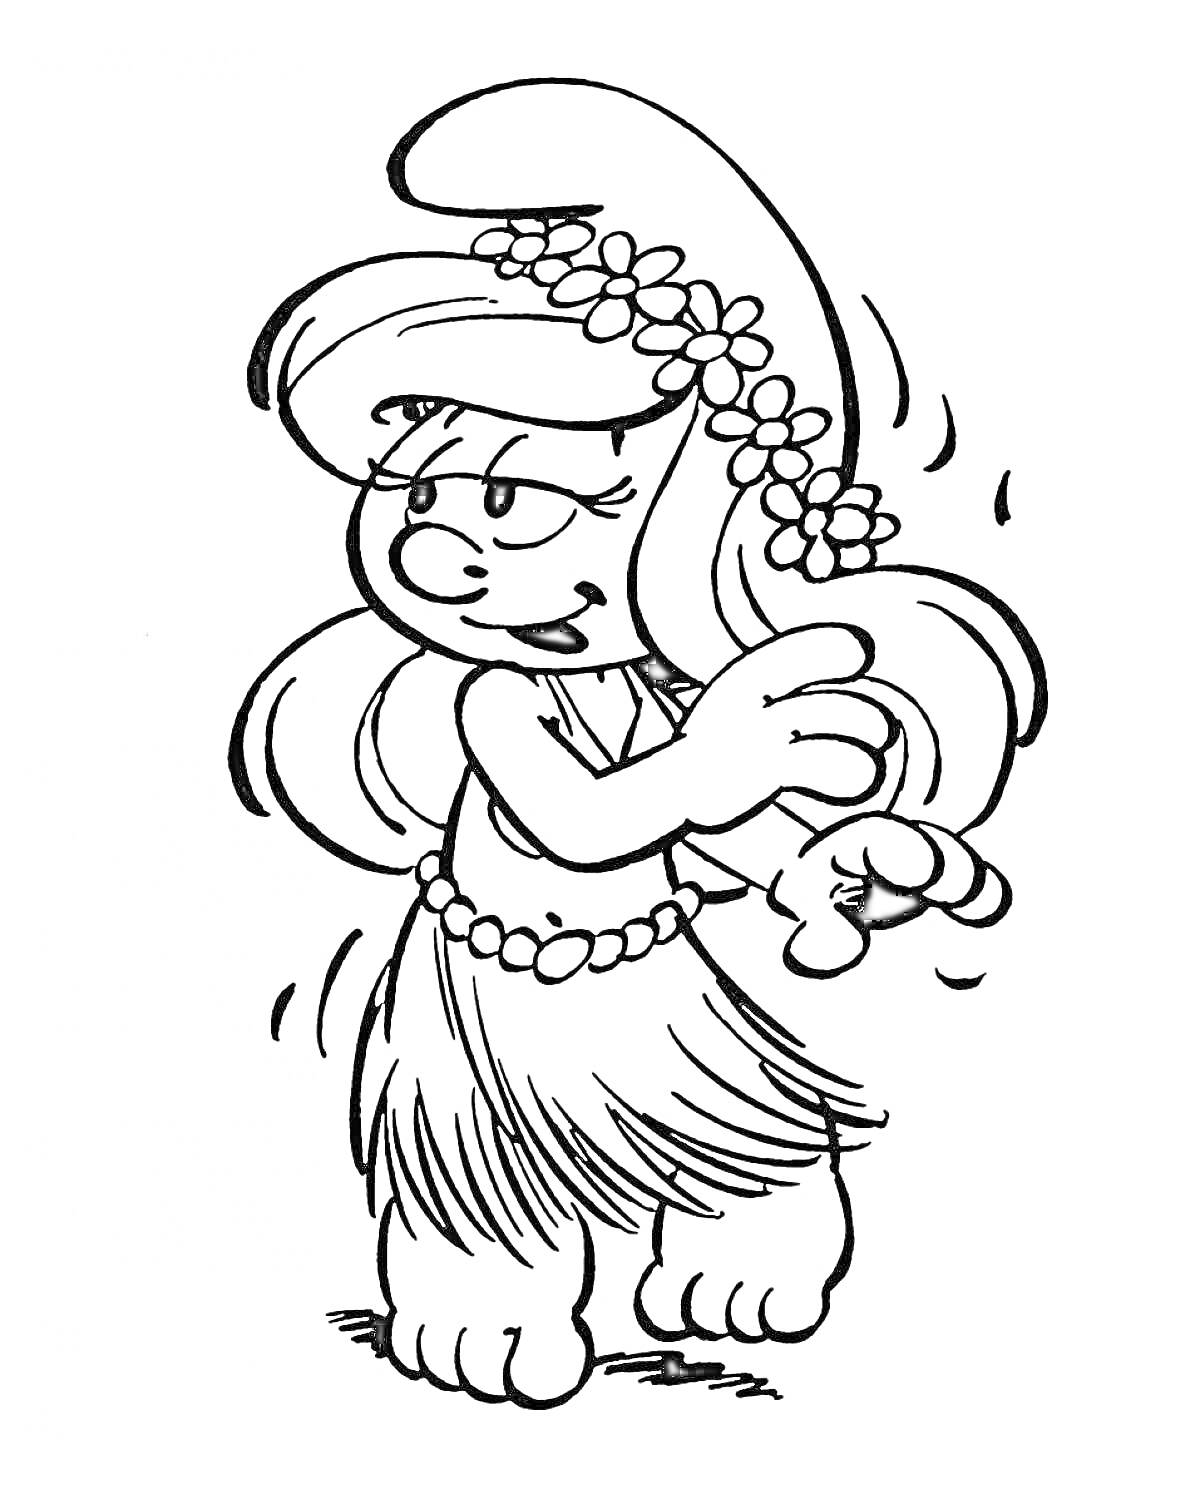 Раскраска Смурфета в гавайской юбке с цветами в волосах